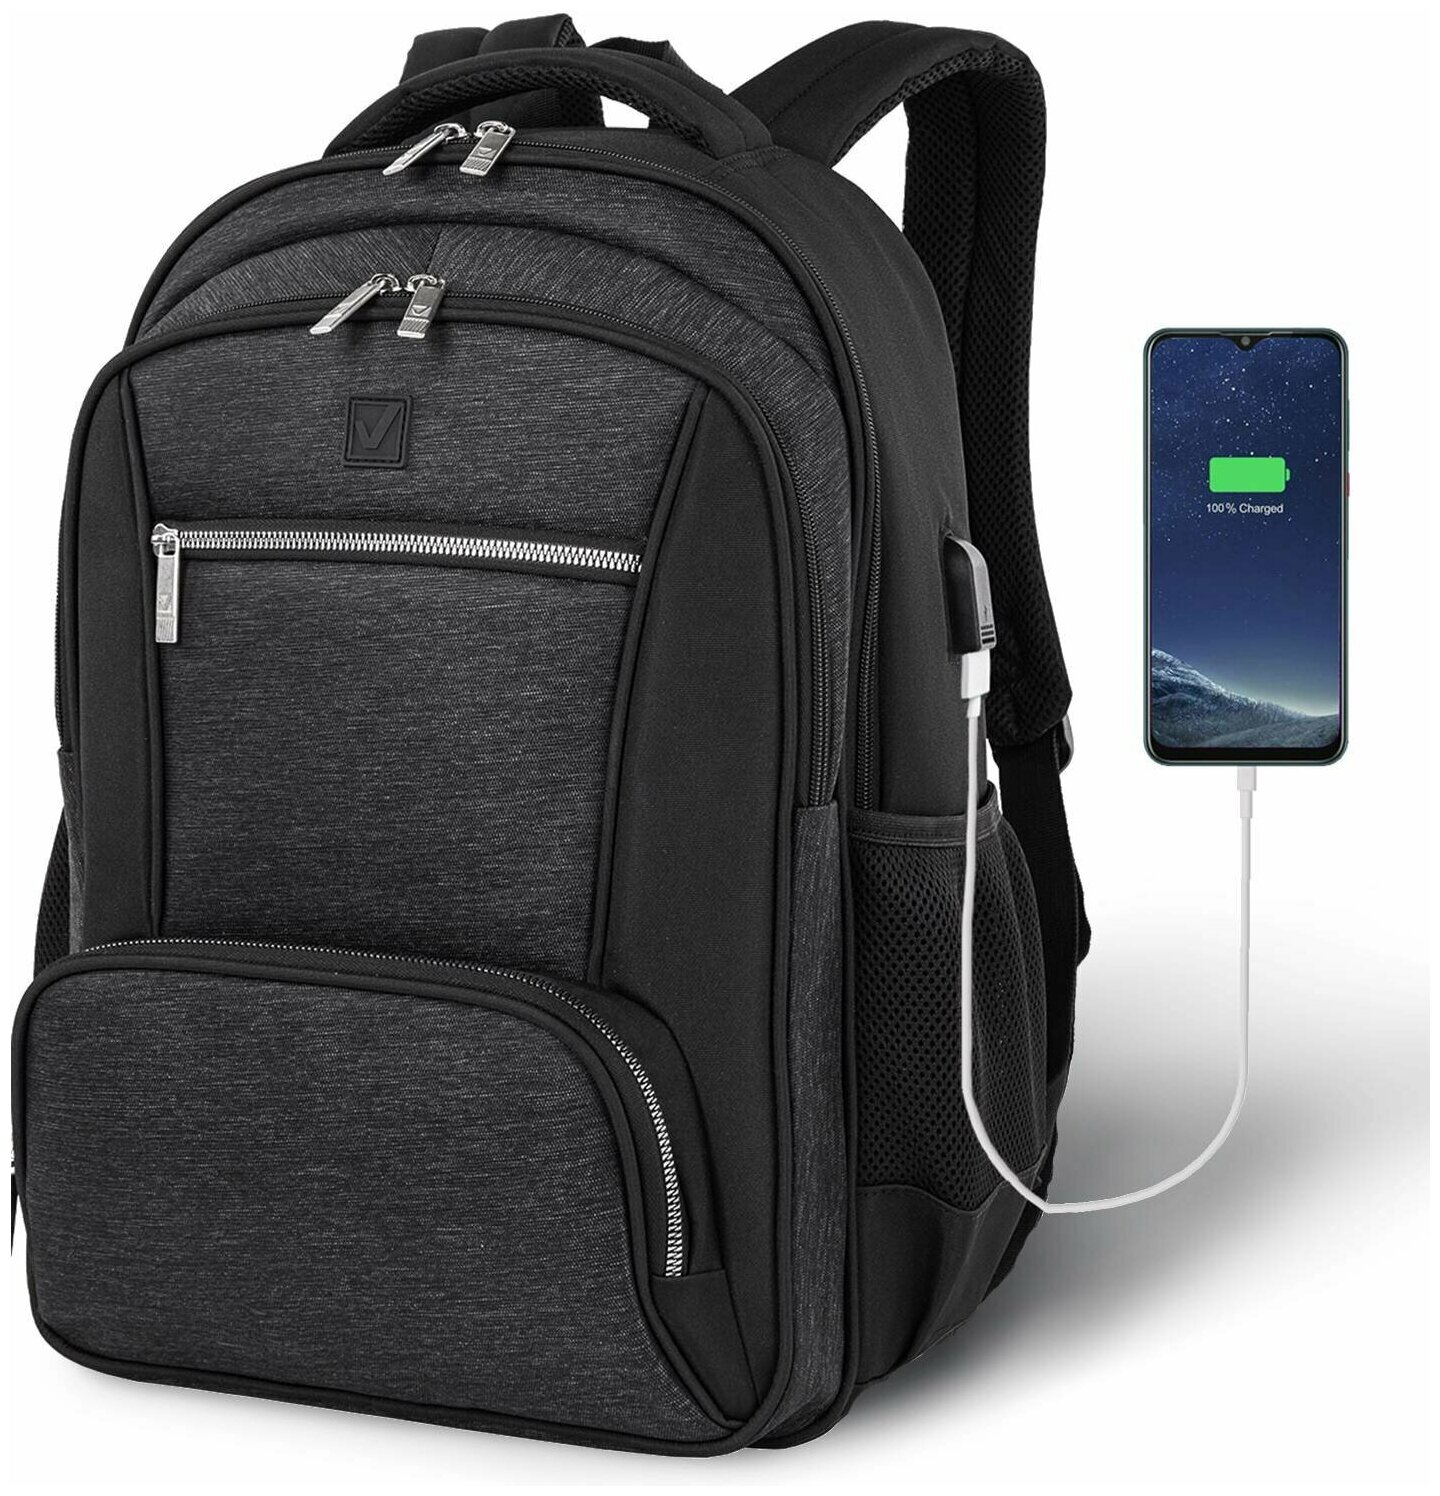 Рюкзак BRAUBERG URBAN универсальный, с отделением для ноутбука, серый/черный, 46х30х18 см, 270751, 270751